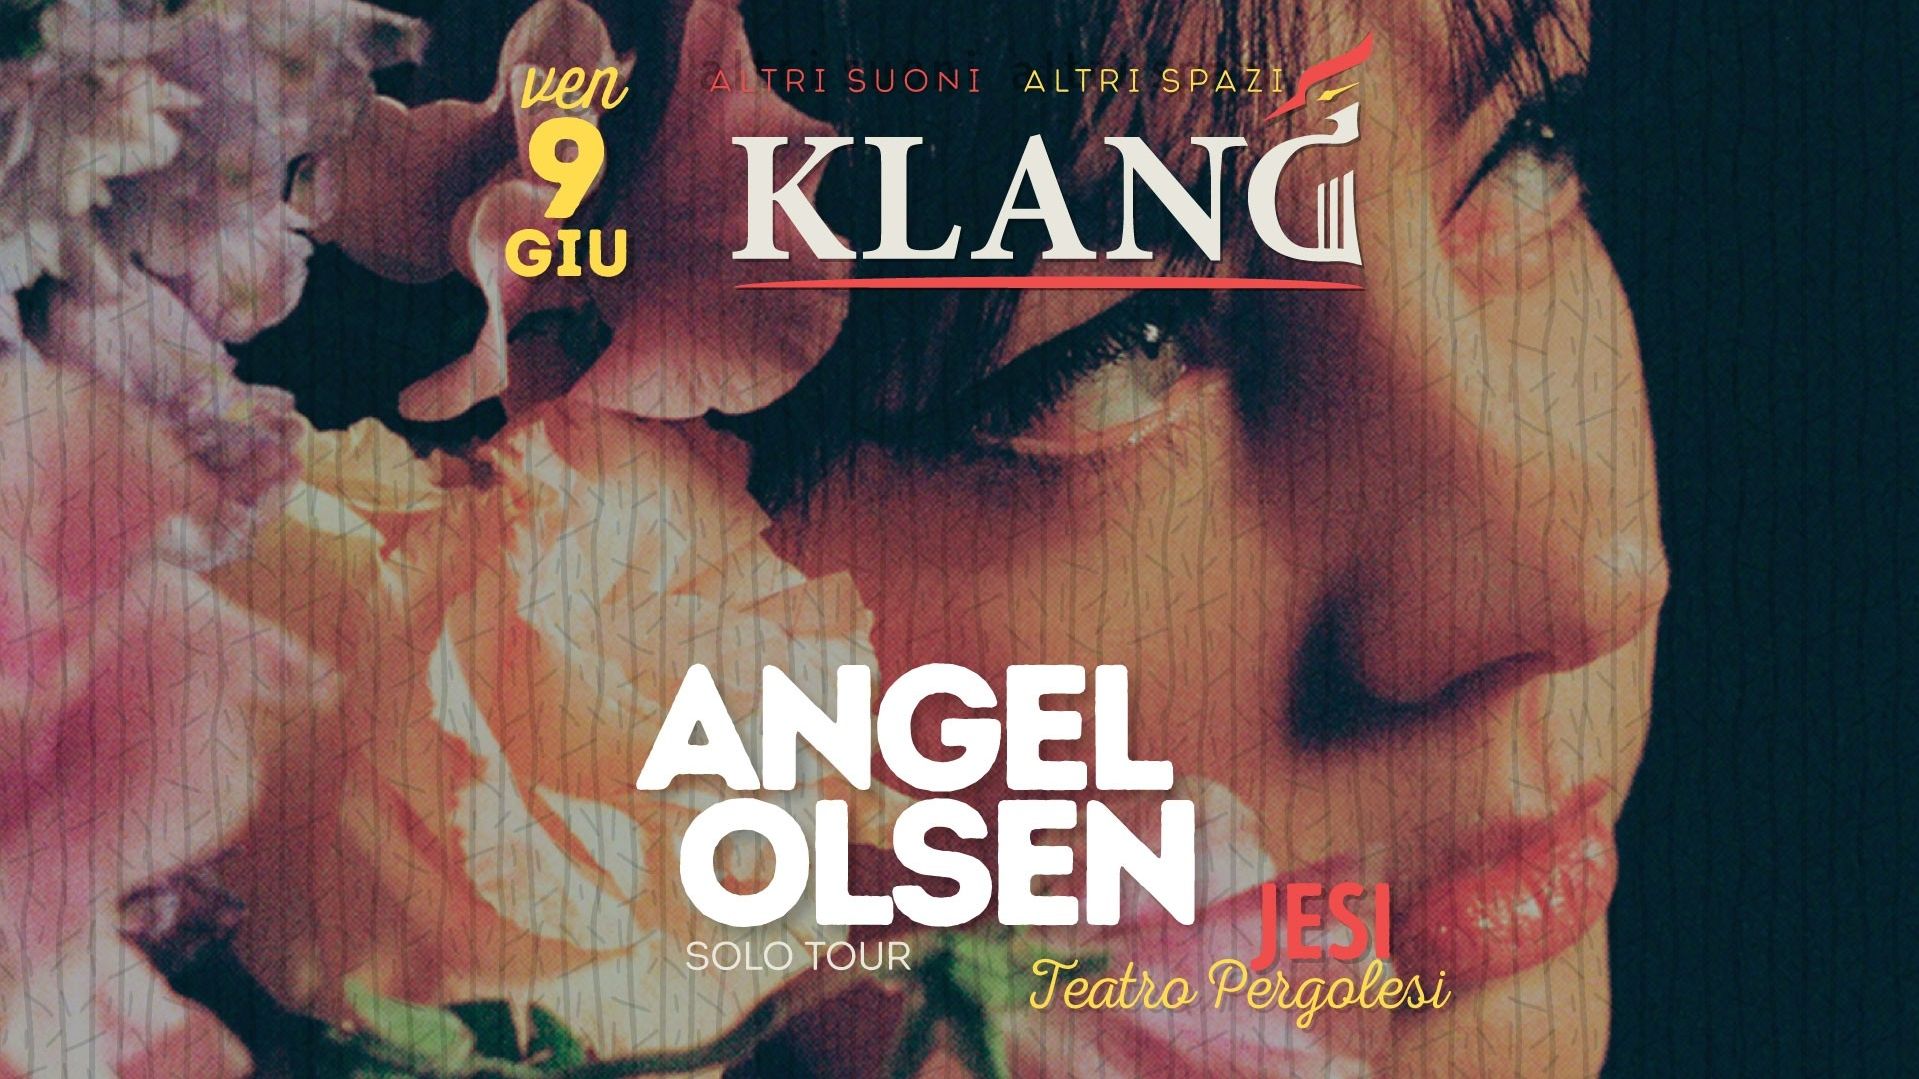 Angel Olsen "solo tour" - [Klang Altri suoni, altri spazi]